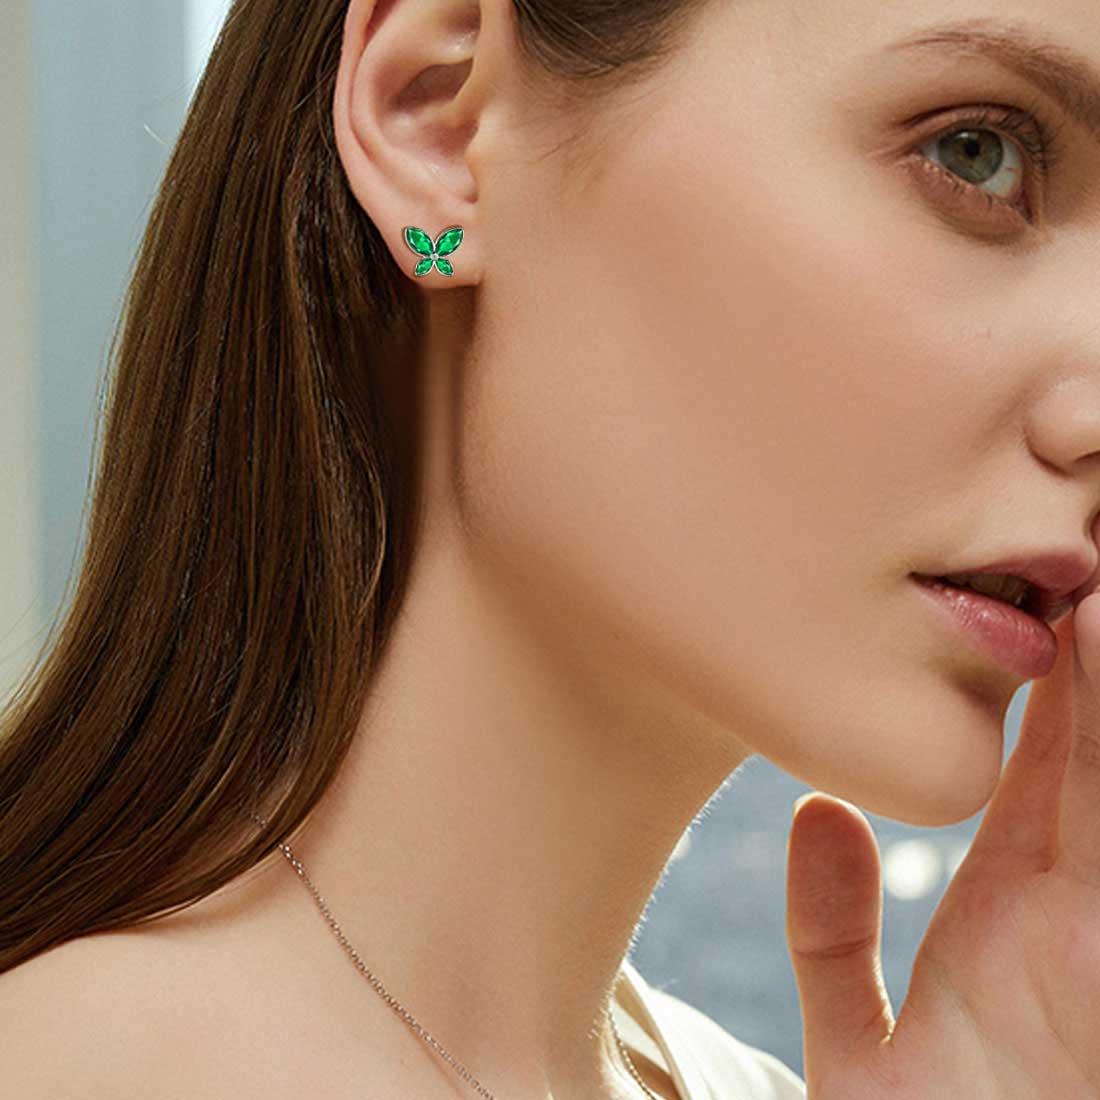 Butterfly Stud Earrings Birthstone May Emerald - Earrings - Aurora Tears